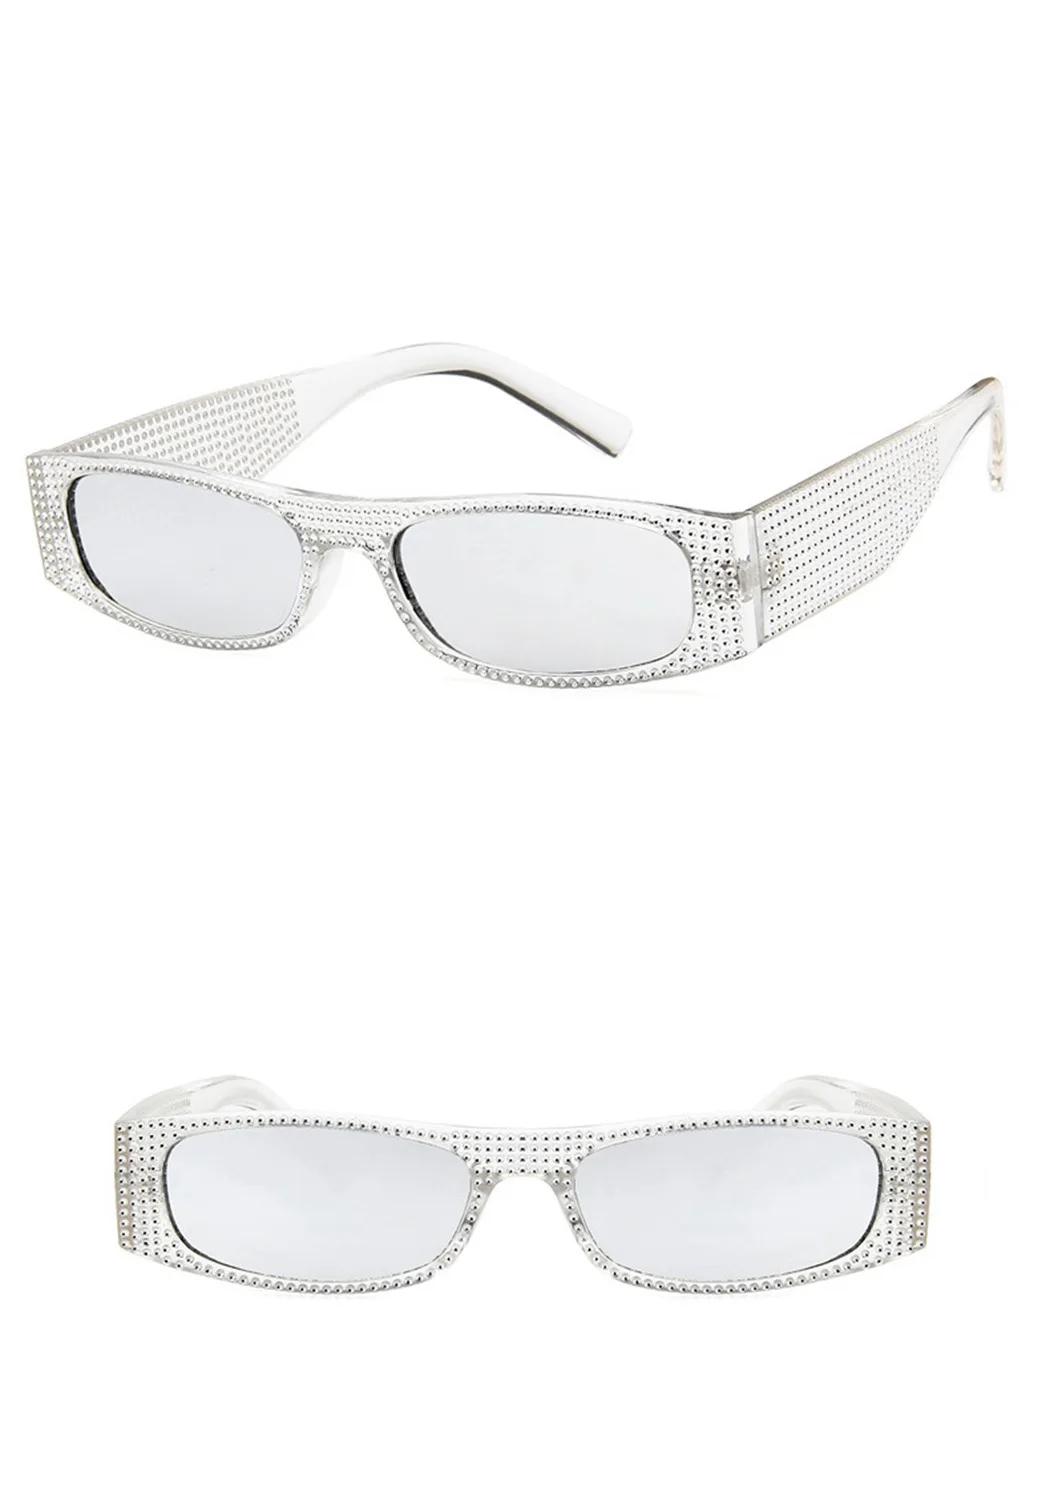 Ретро стиль, стразы, солнцезащитные очки для женщин, фирменный дизайн, прямоугольные солнцезащитные очки, для девушек, блестящая маленькая оправа, солнцезащитные очки